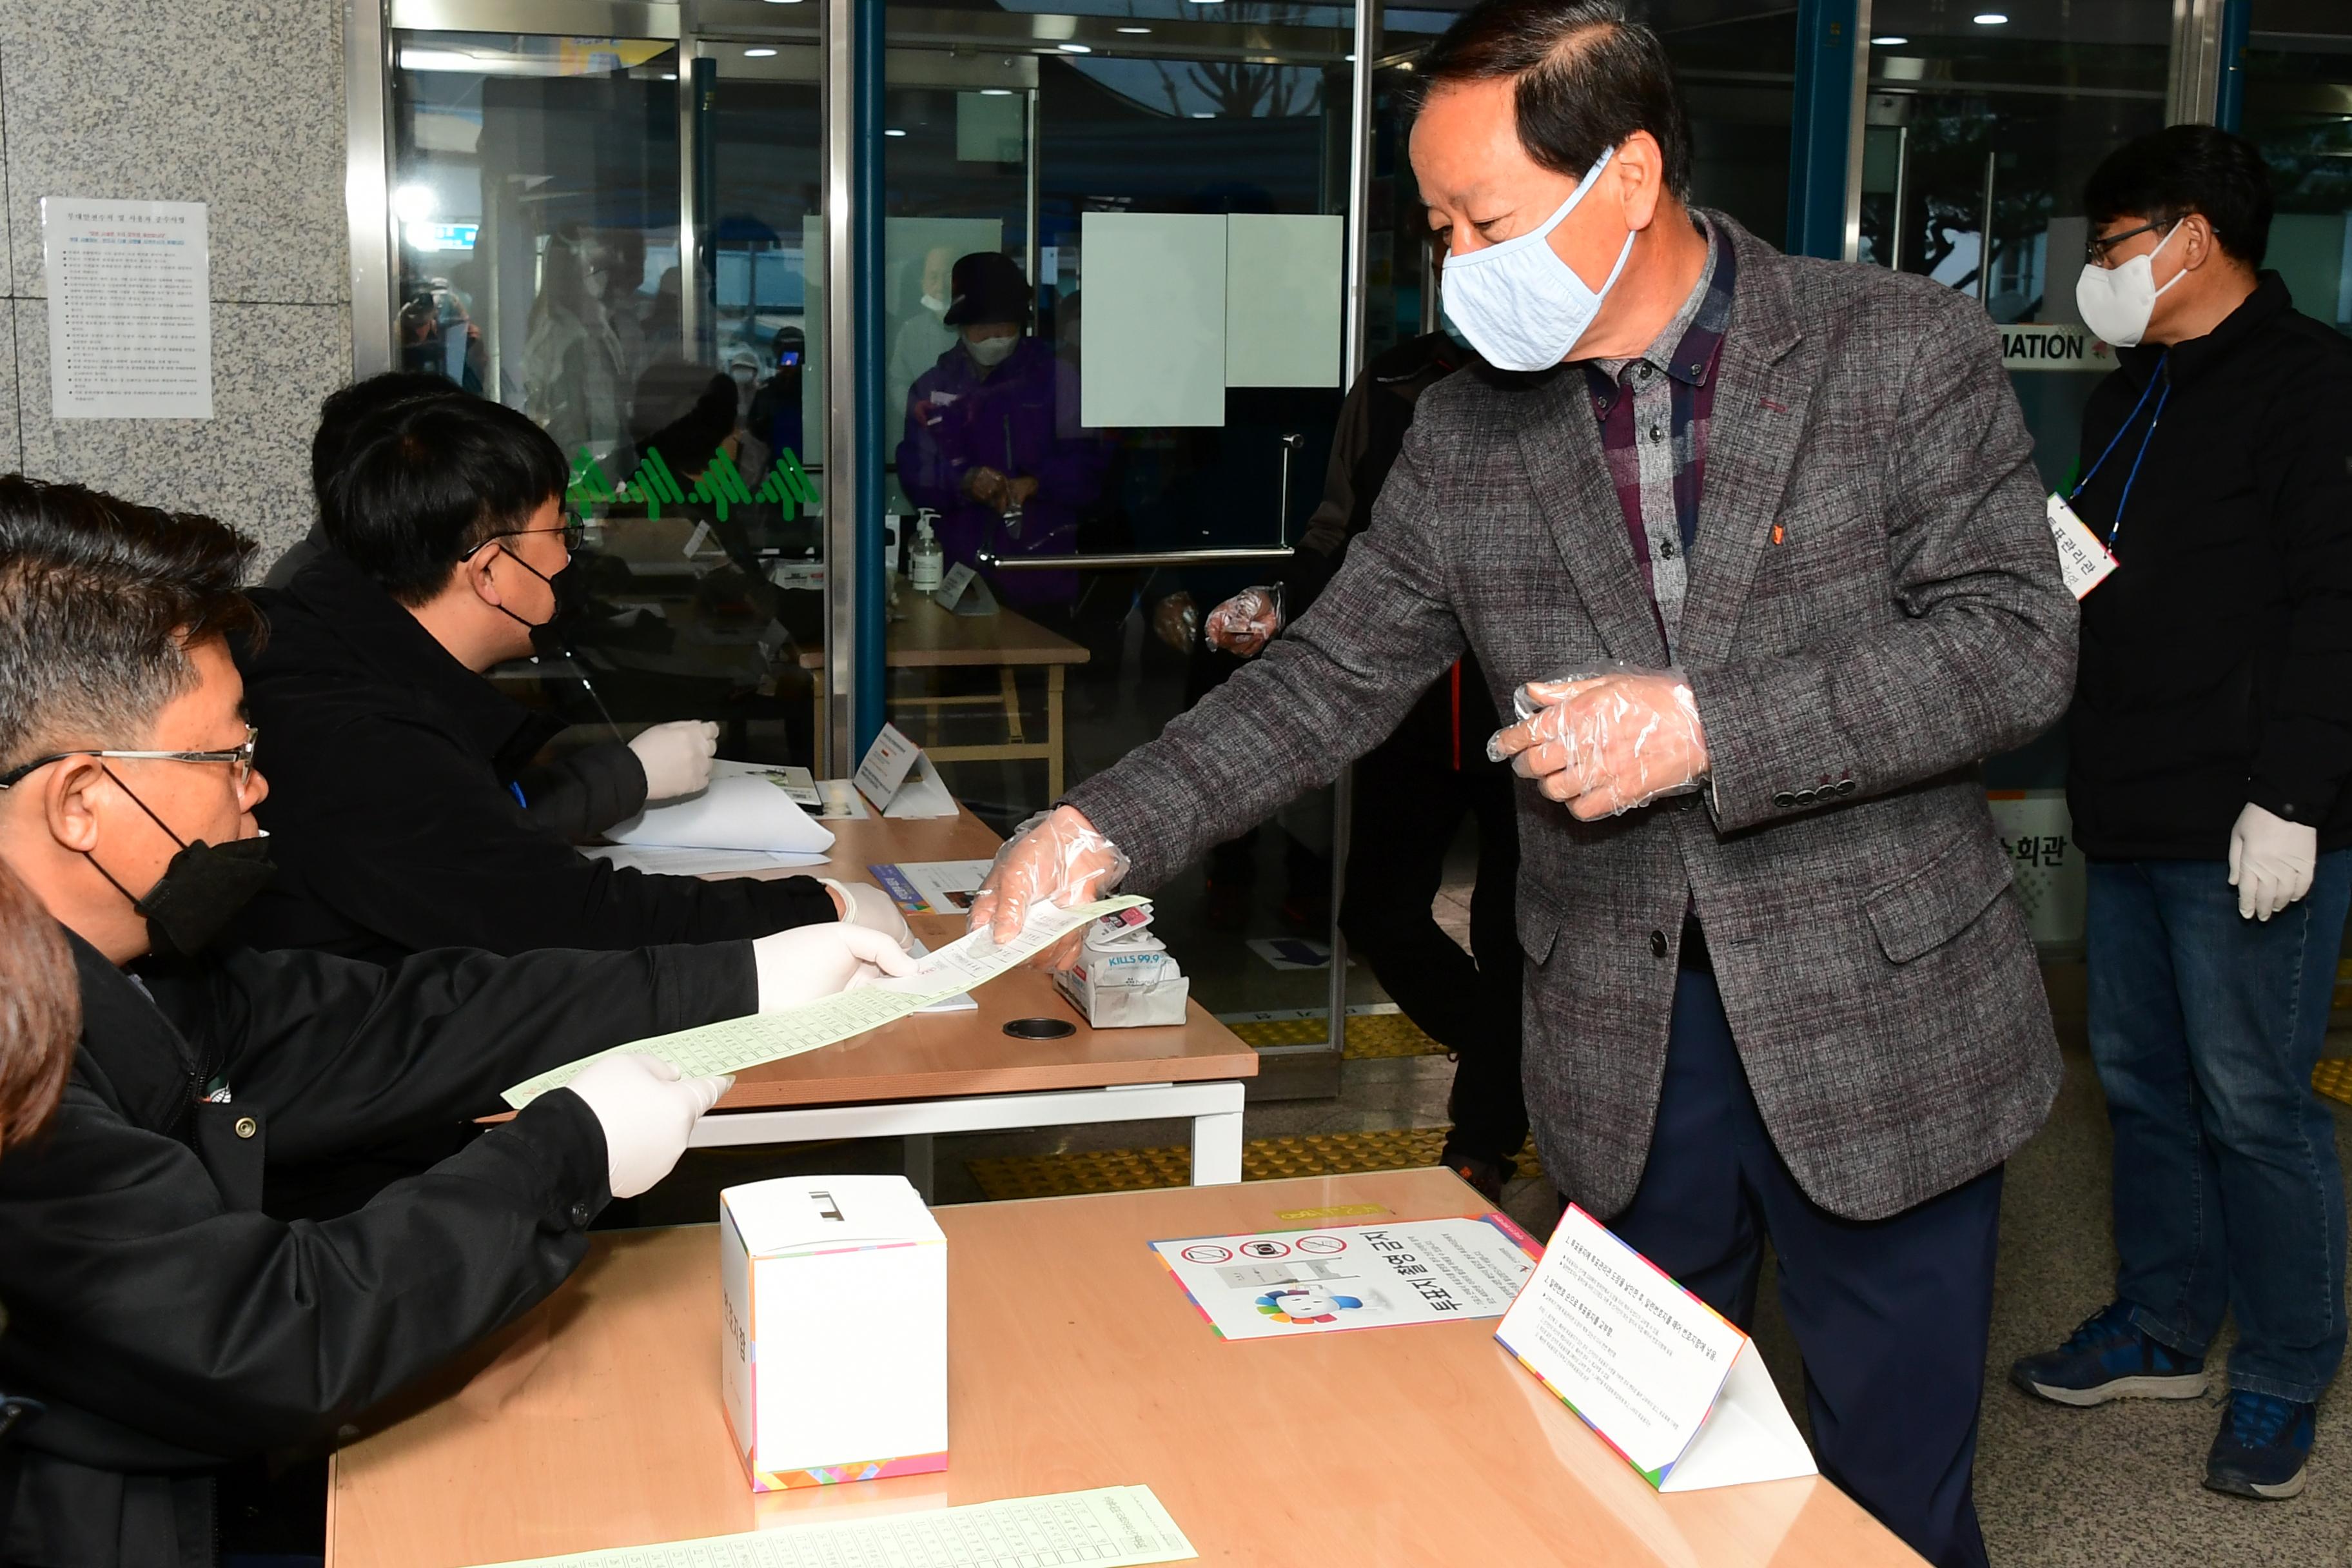 2020 제21대 국회의원 선거 의 사진